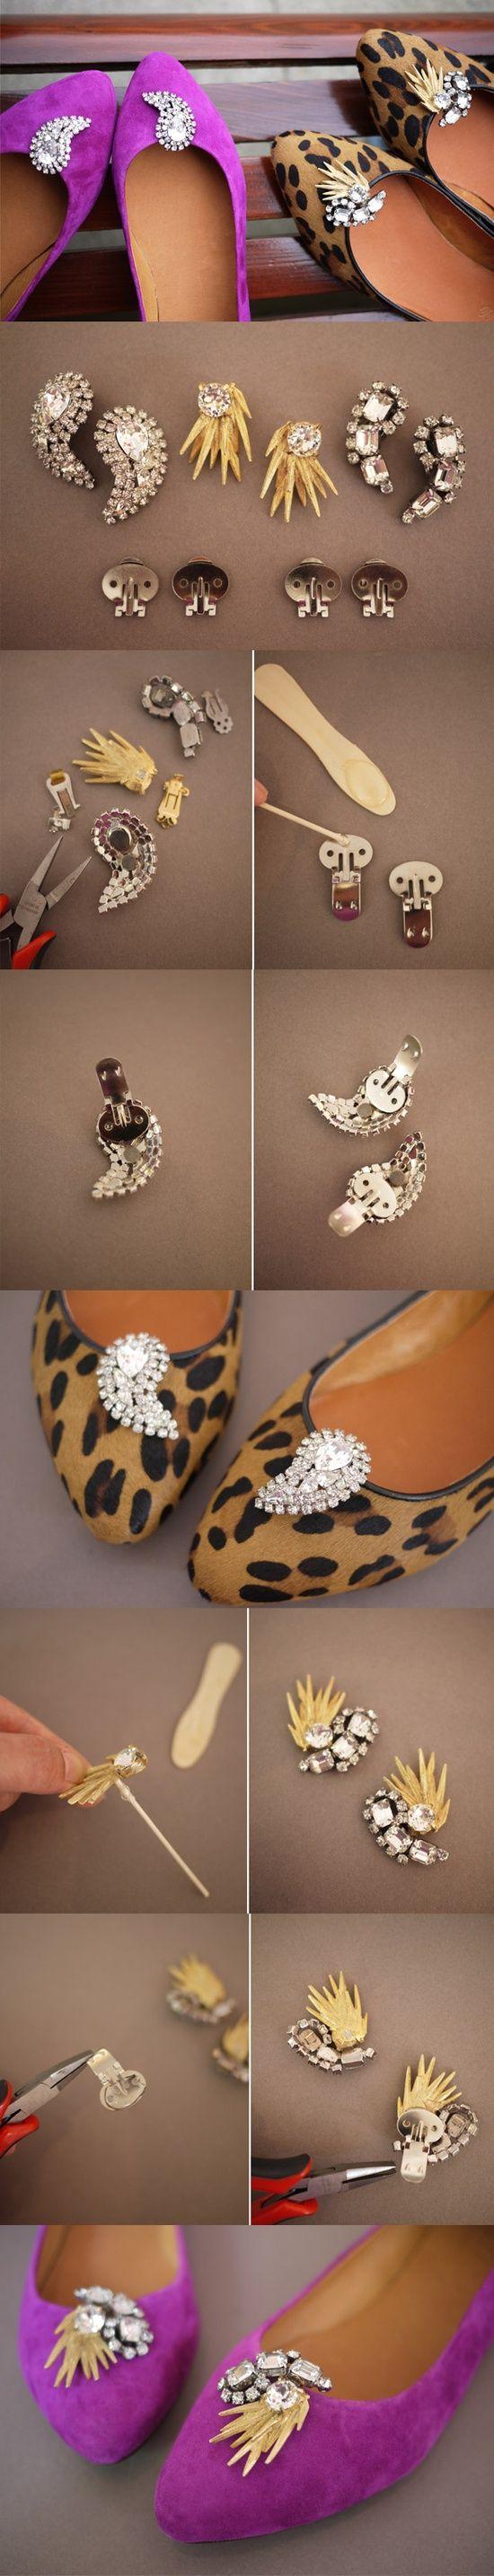 Hochzeit - # # DIY Schuhe! Oh .... Das Bling